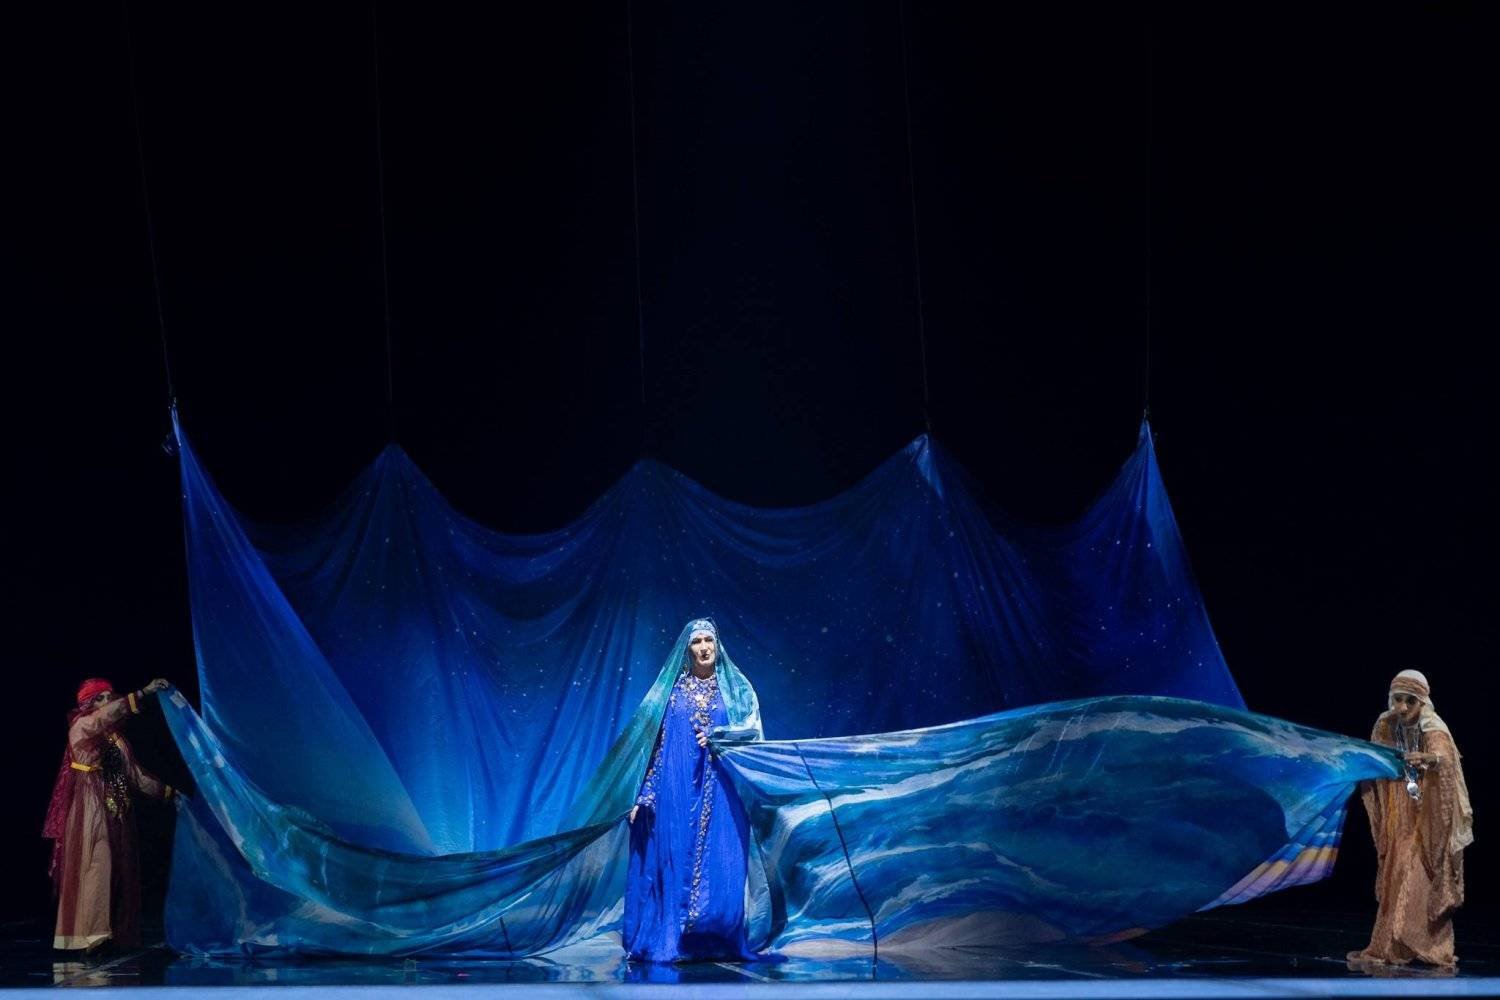 مغنية الميزو سوبرانو الشهيرة سارة كونولي تلعب دور «زرقاء اليمامة» (هيئة المسرح والفنون الأدائية السعودية)